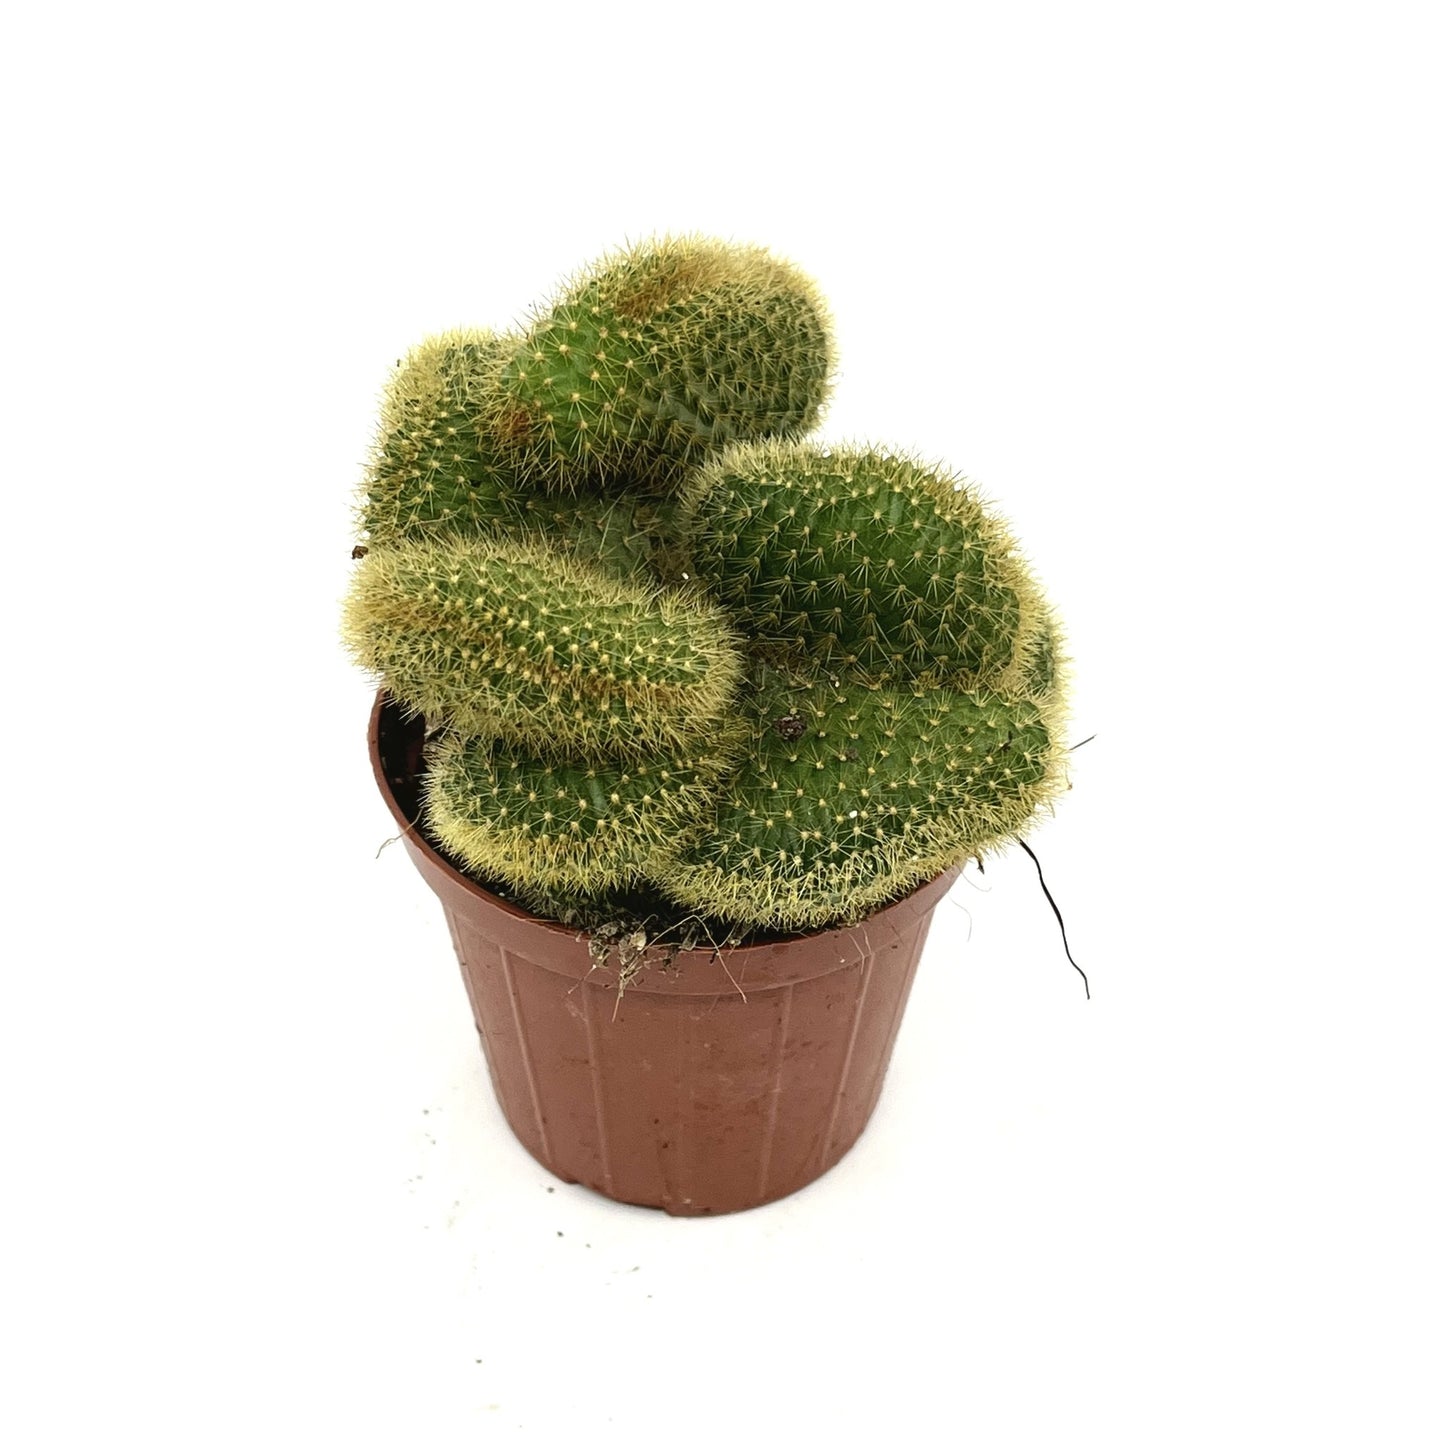 Aporocactus sp. f cristata